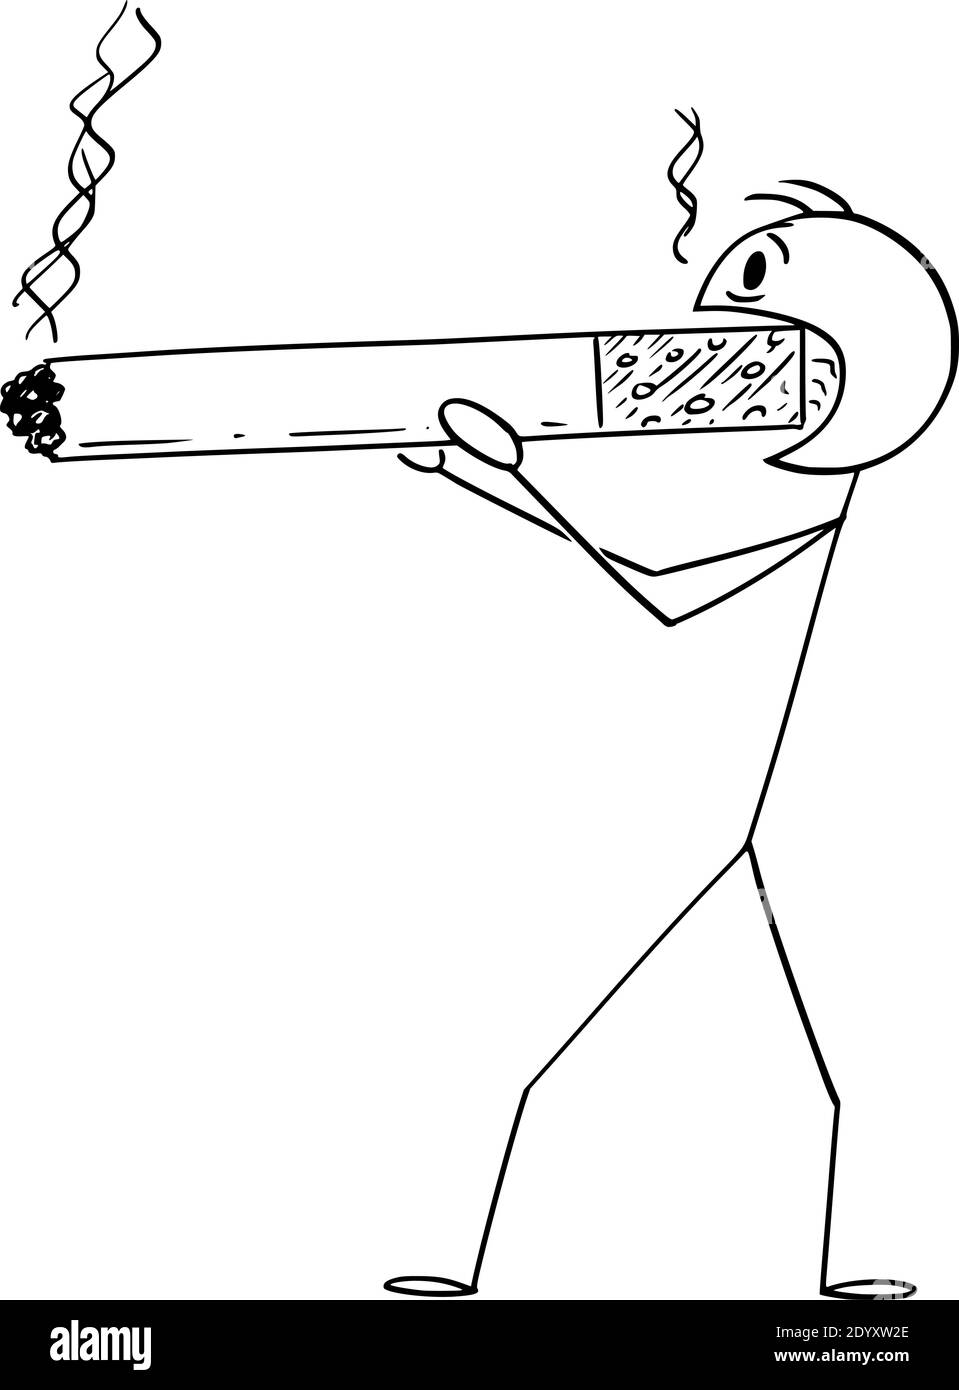 Vektor Cartoon Stick Figur Illustration von Mann oder Raucher halten und rauchen riesige oder große Zigarette. Konzept von Gesundheit und Lebensstil. Stock Vektor